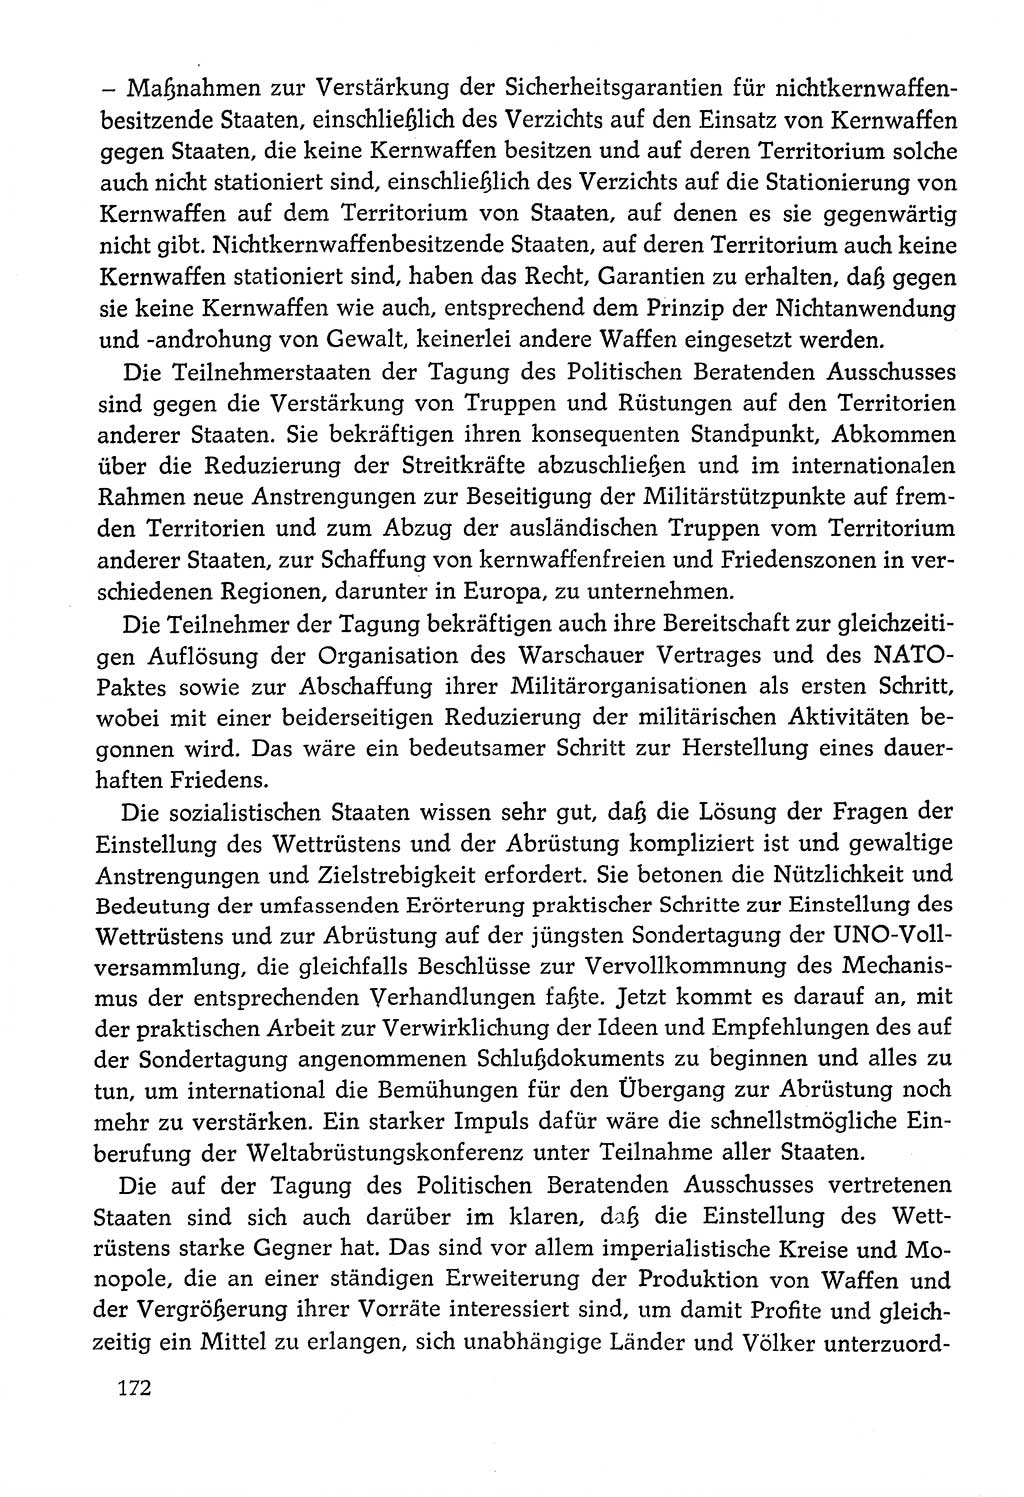 Dokumente der Sozialistischen Einheitspartei Deutschlands (SED) [Deutsche Demokratische Republik (DDR)] 1978-1979, Seite 172 (Dok. SED DDR 1978-1979, S. 172)